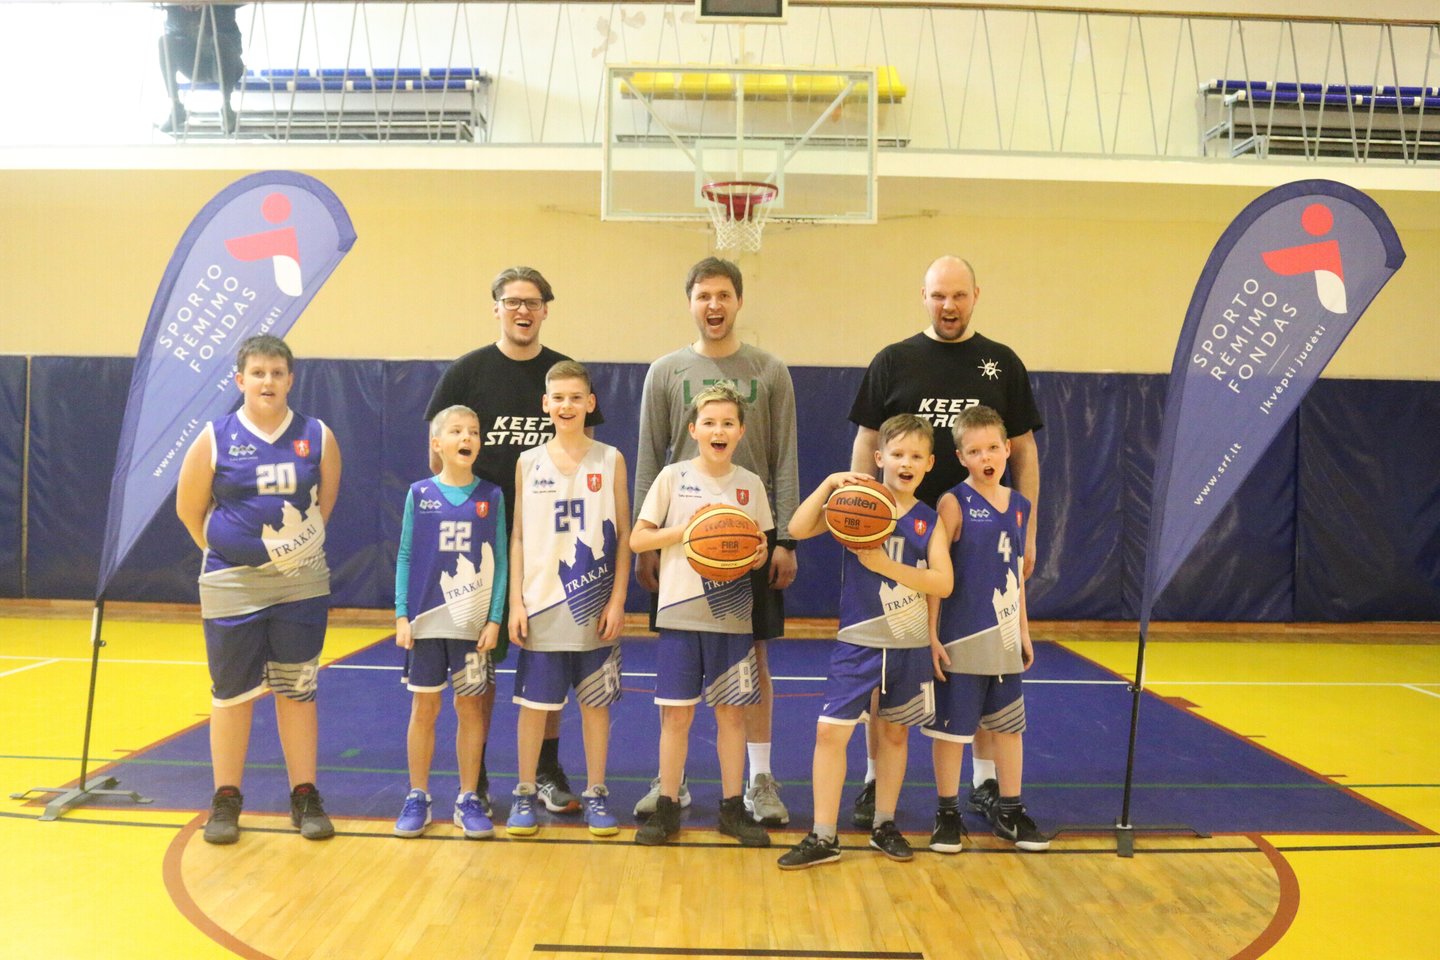  Po Lietuvą keliaujantis „Ryto“ jaunimo programos treneris: „Stengiamės išmokyti vaikus krepšinio naujovių“<br> SkillsAcademy.lt nuotr.